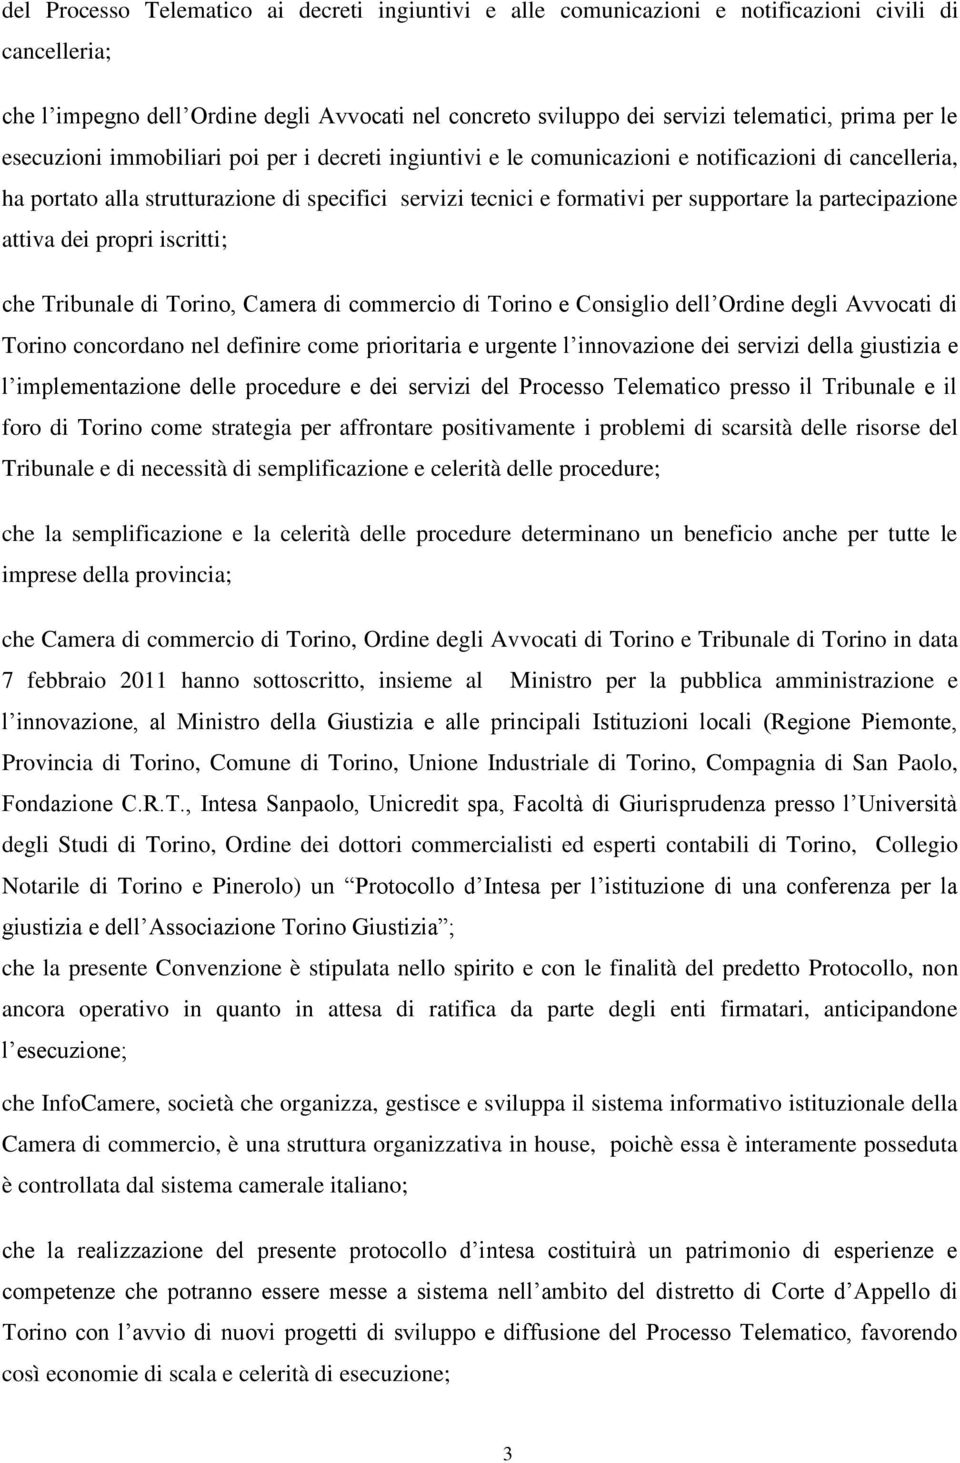 partecipazione attiva dei propri iscritti; che Tribunale di Torino, Camera di commercio di Torino e Consiglio dell Ordine degli Avvocati di Torino concordano nel definire come prioritaria e urgente l